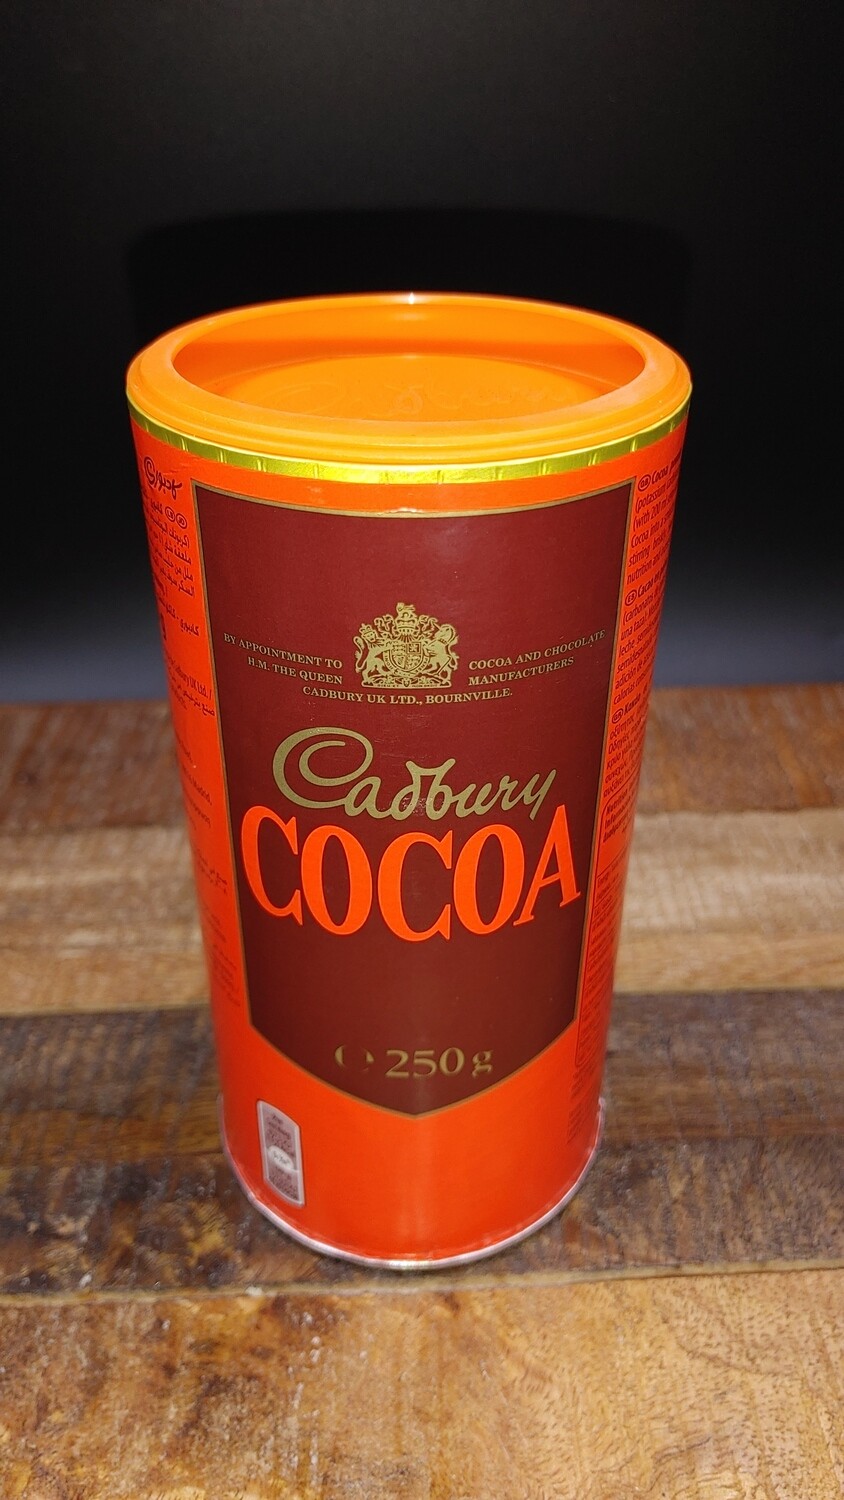 Cadbury Cocoa 250g